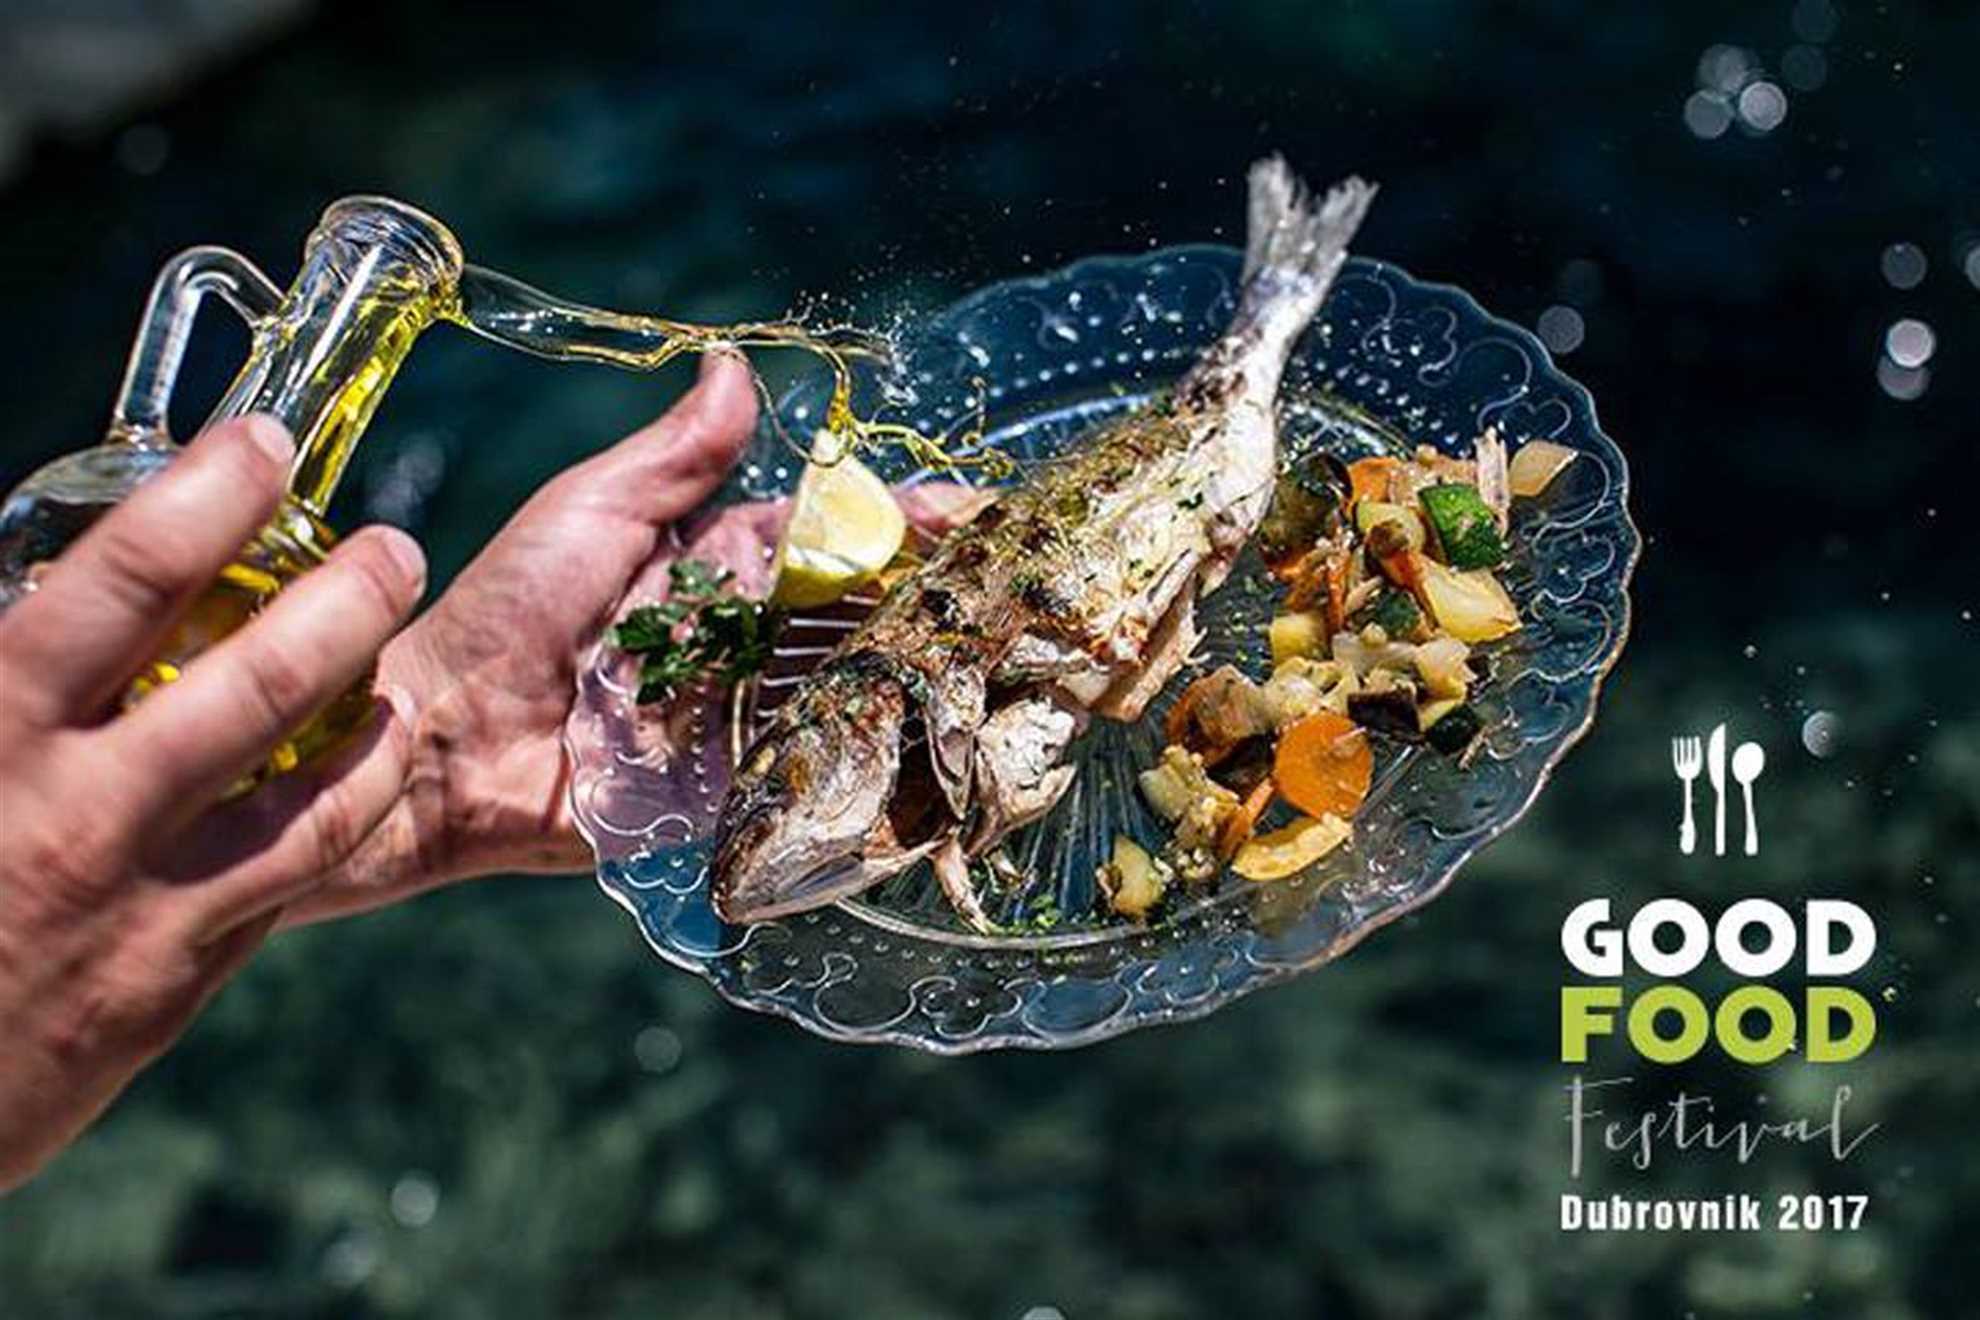 Festival dobre hrane Dubrovnik